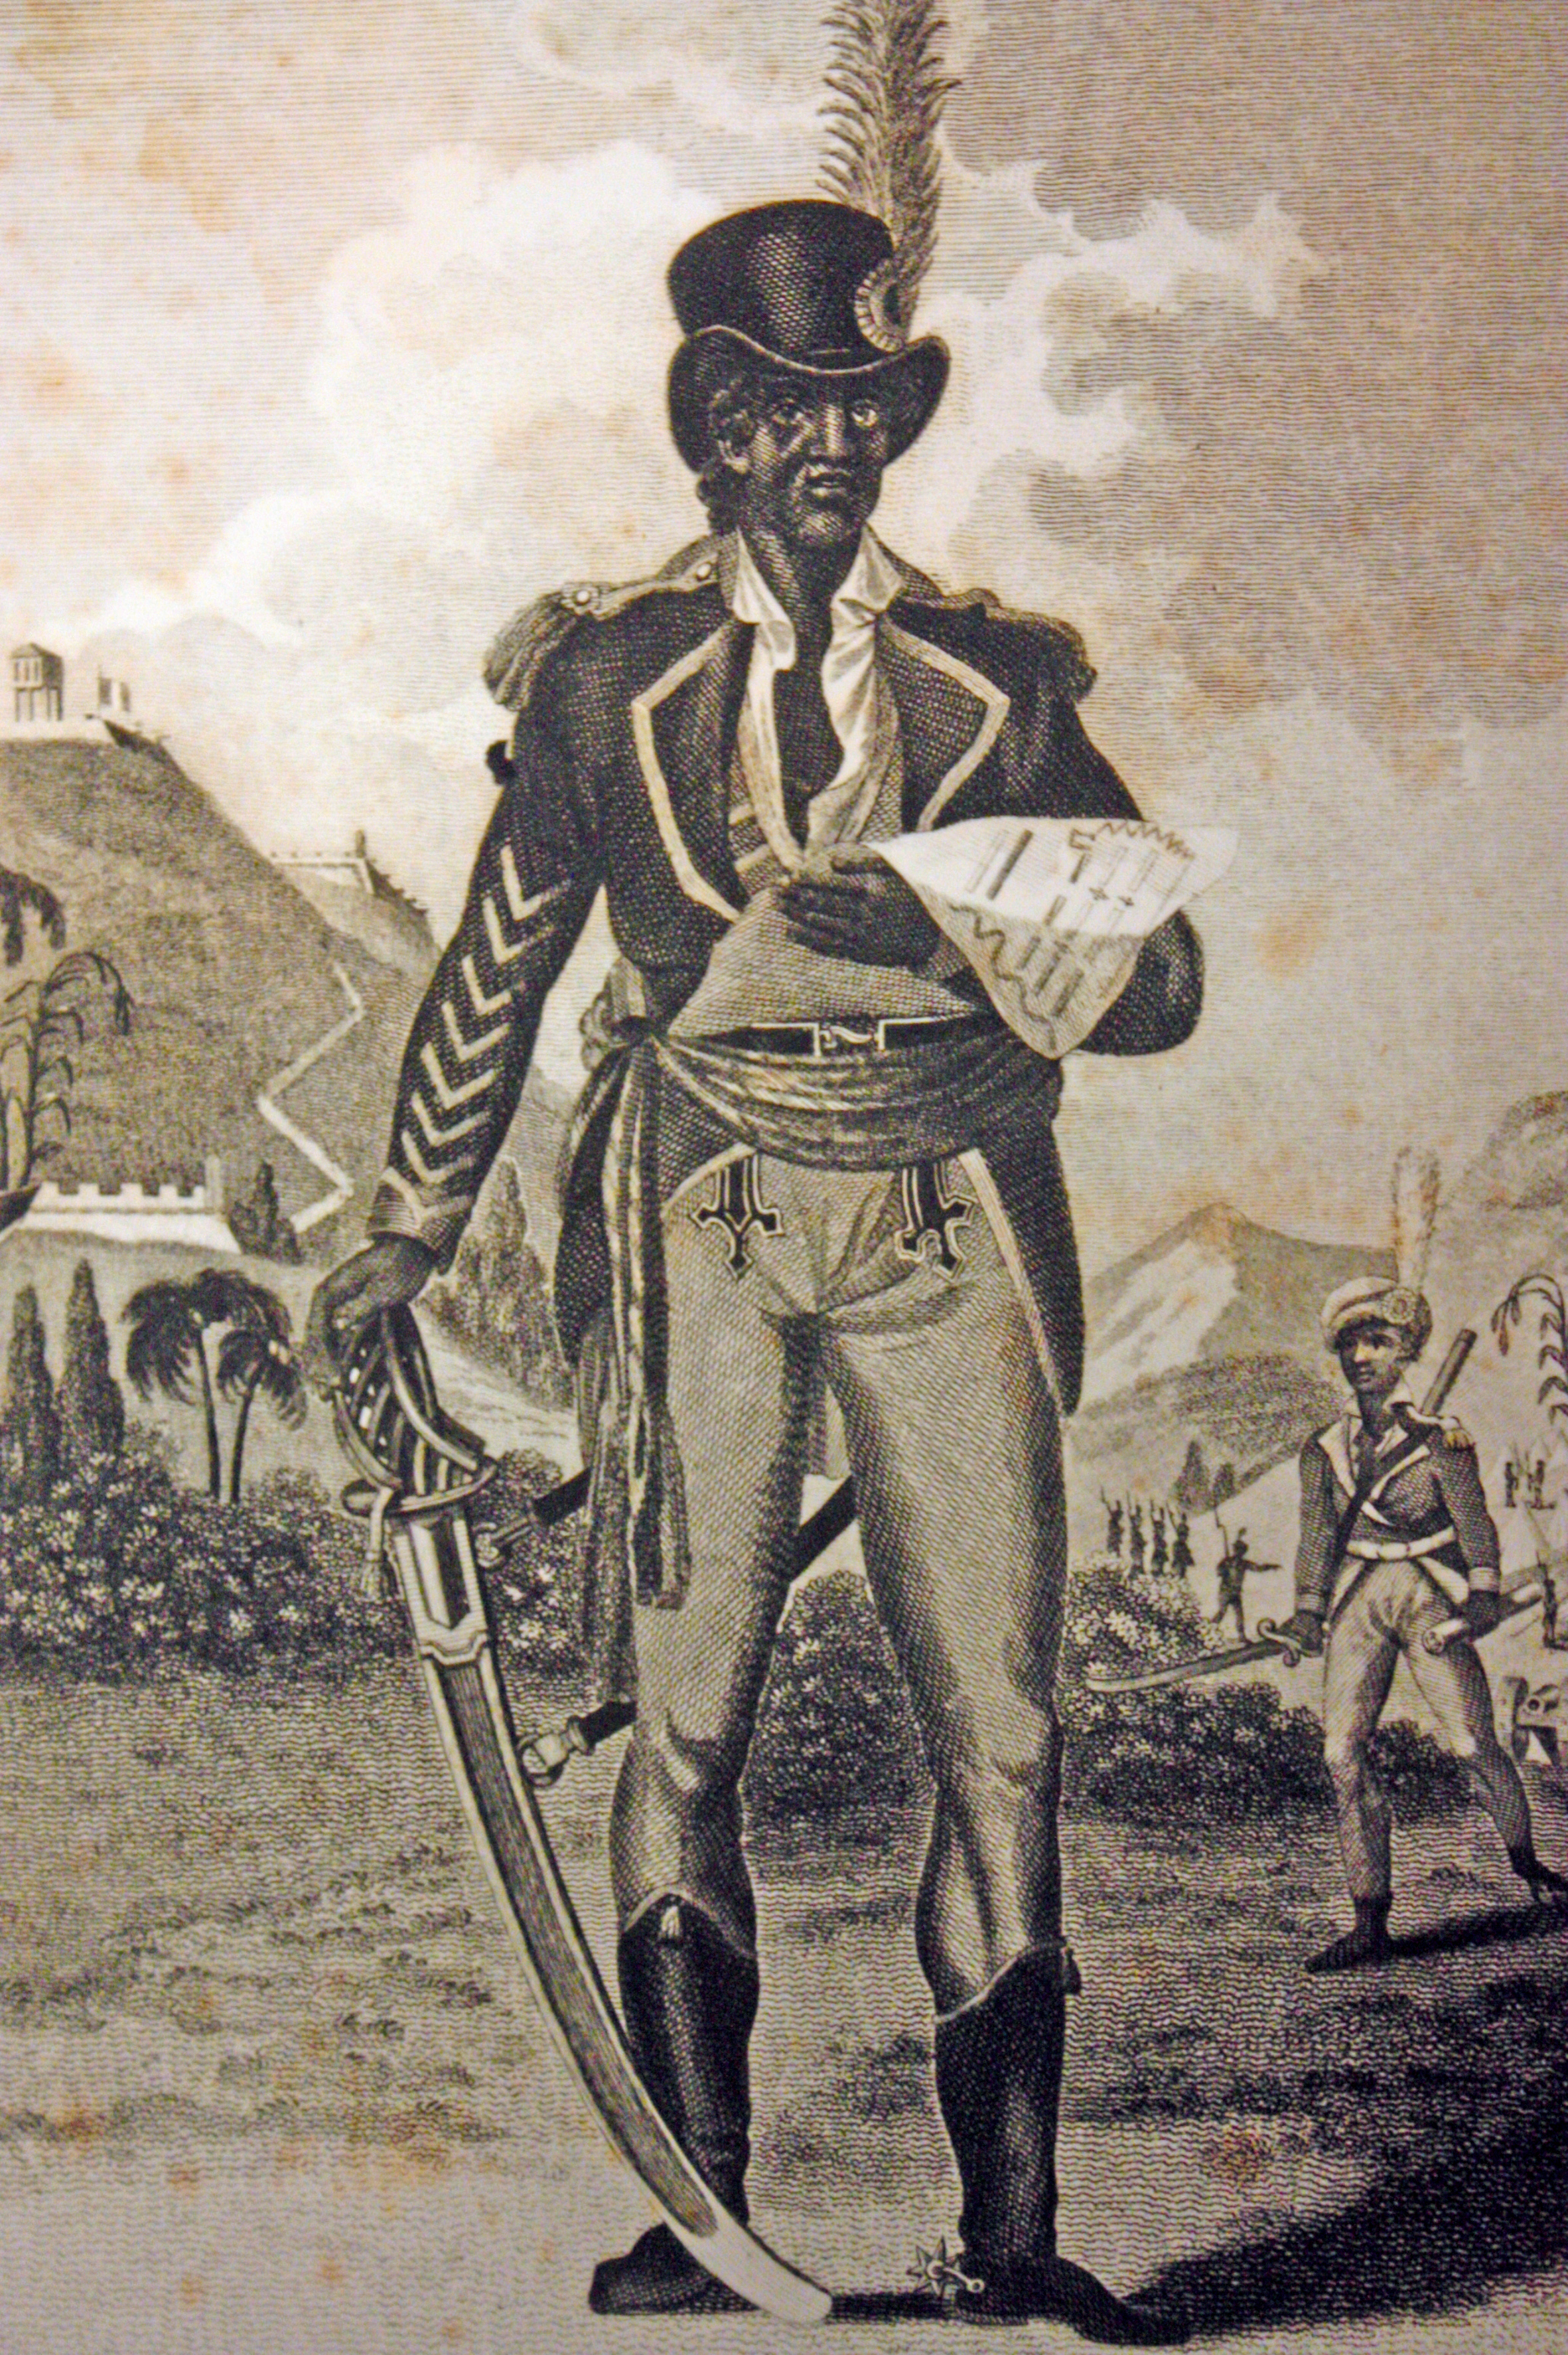 Toussaint Louverture, żołnierz, przywódca i polityk, w 1801 roku ogłosił pierwszą konstytucję Haiti. Fot. Wikimedia Commons